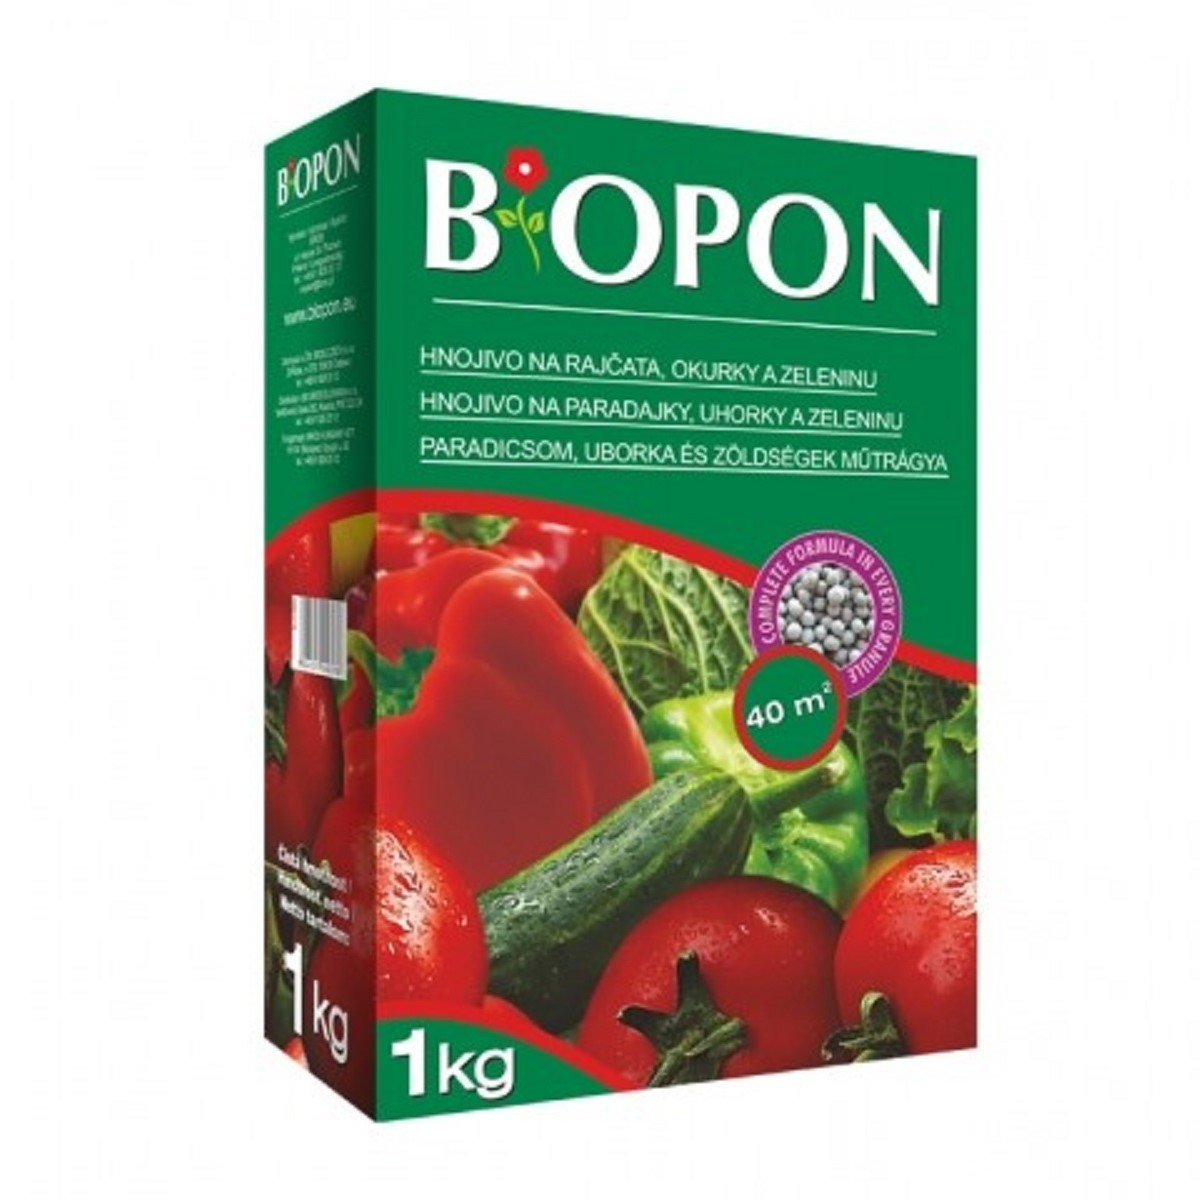 Hnojivo pro rajčata a okurky - BoPon - prodej hnojiv - 1 kg